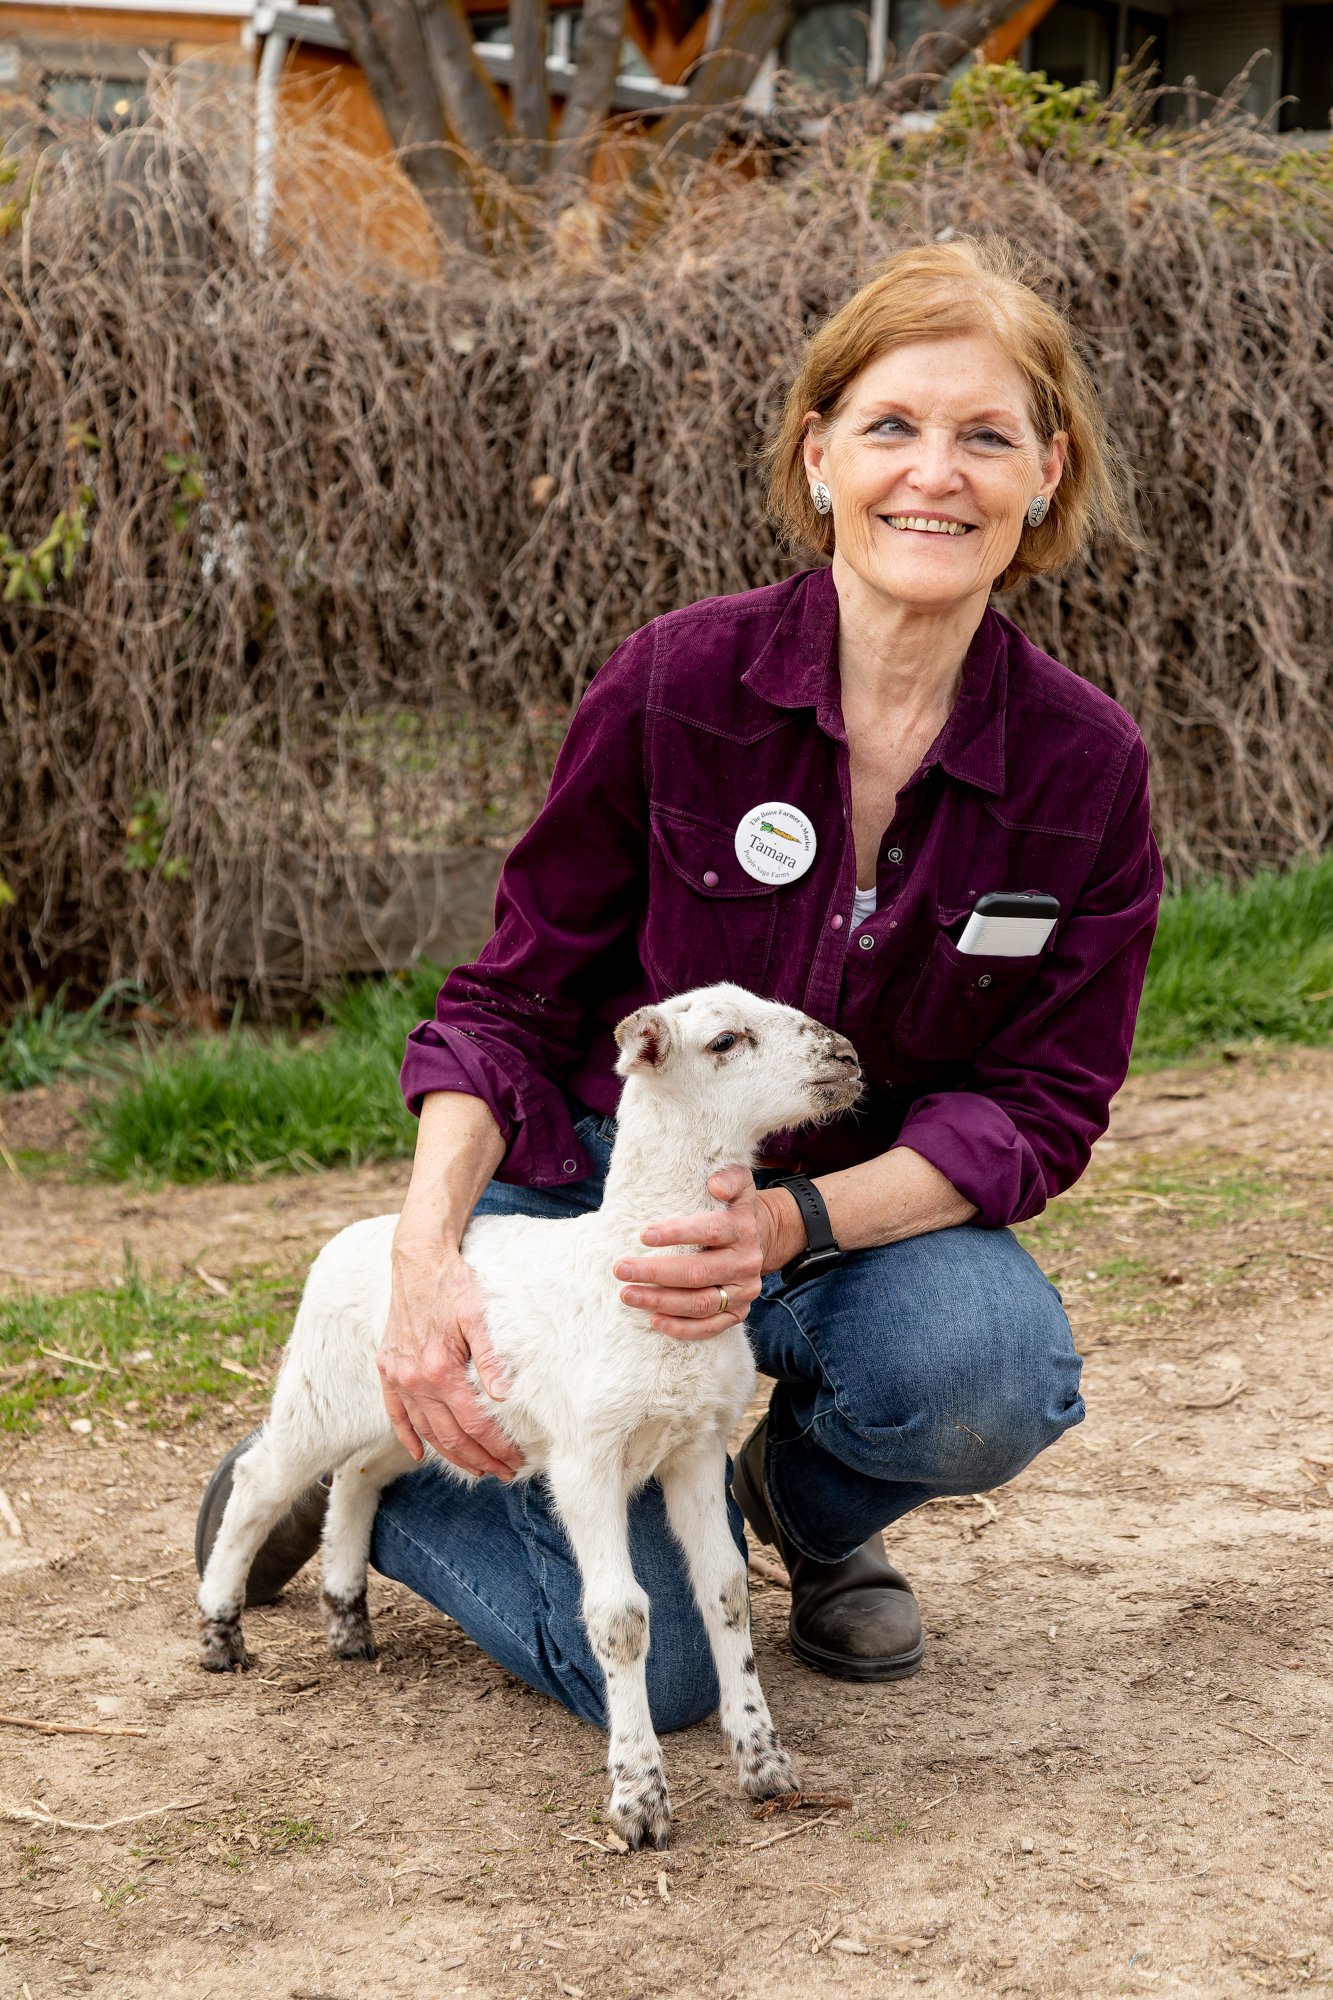 Tamara poses with the lamb, Nibbles.